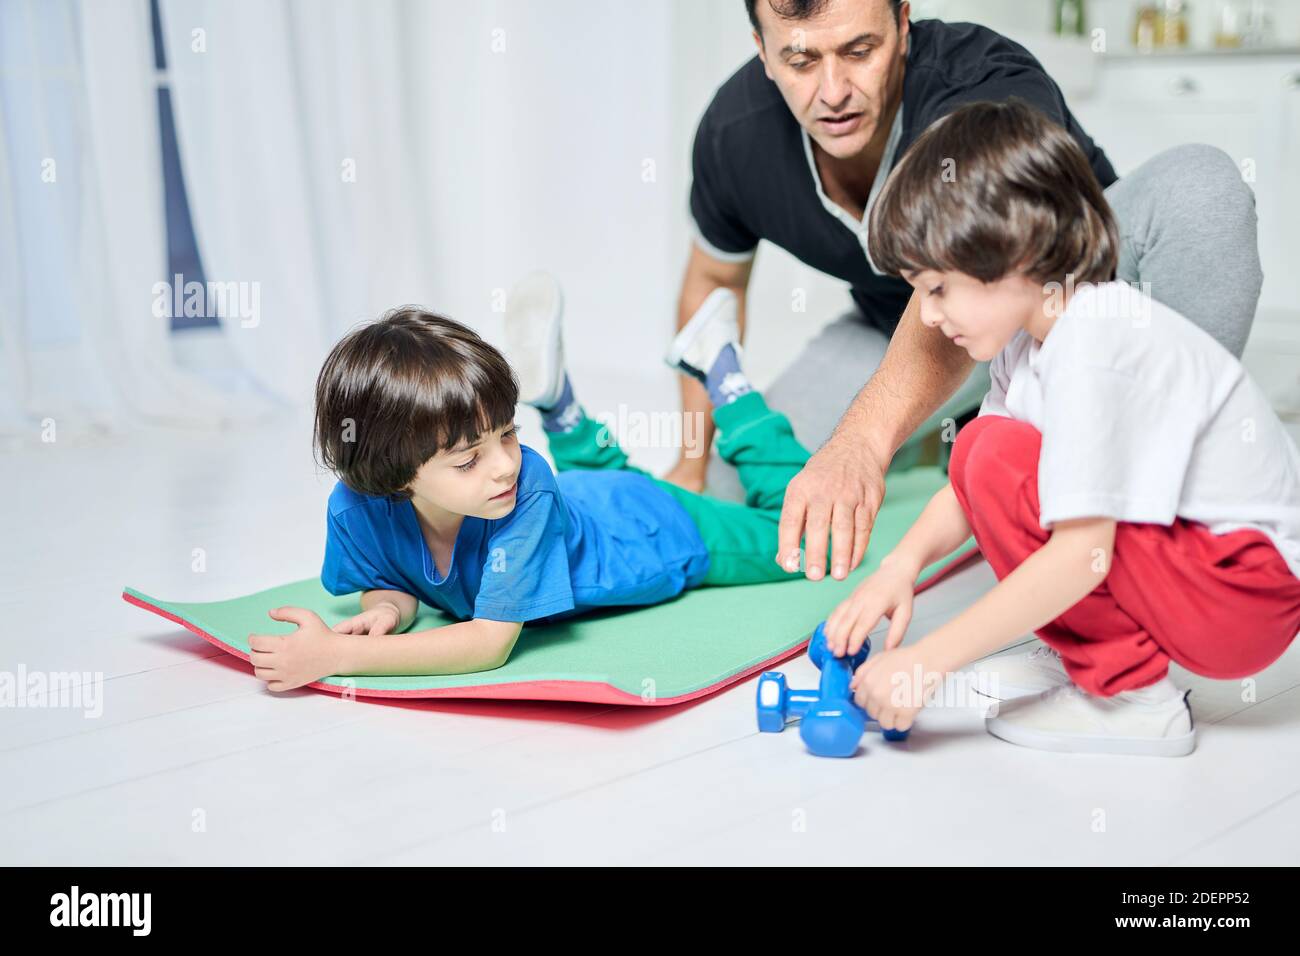 Fürsorglicher hispanischer Vater, der Zeit mit seinen zwei kleinen Jungen verbringt, zusammen trainiert, während er auf einer Matte im häuslichen Interieur sitzt. Vaterschaft, Sport, Bildungskonzept Stockfoto